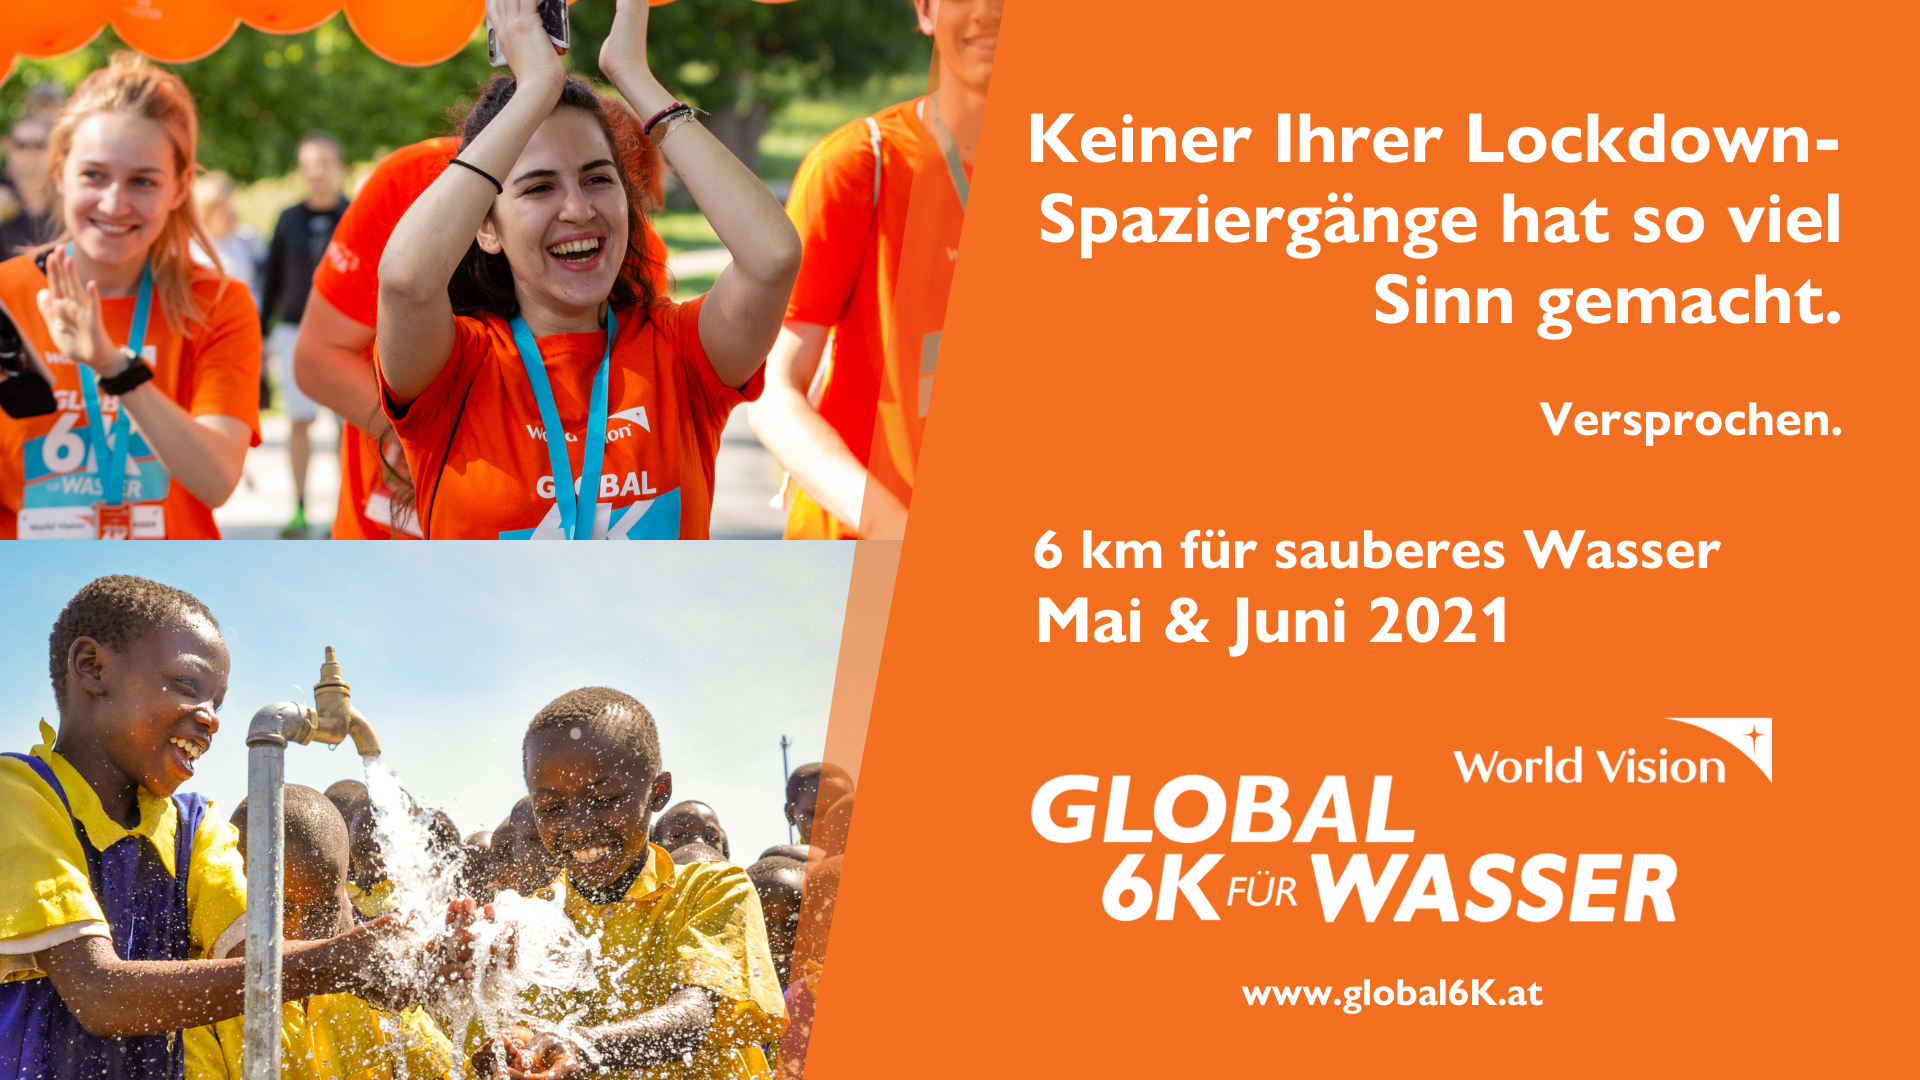 Global 6K: 6 Kilometer gehen und einem Kind Zugang zu sauberem Wasser ermöglichen.